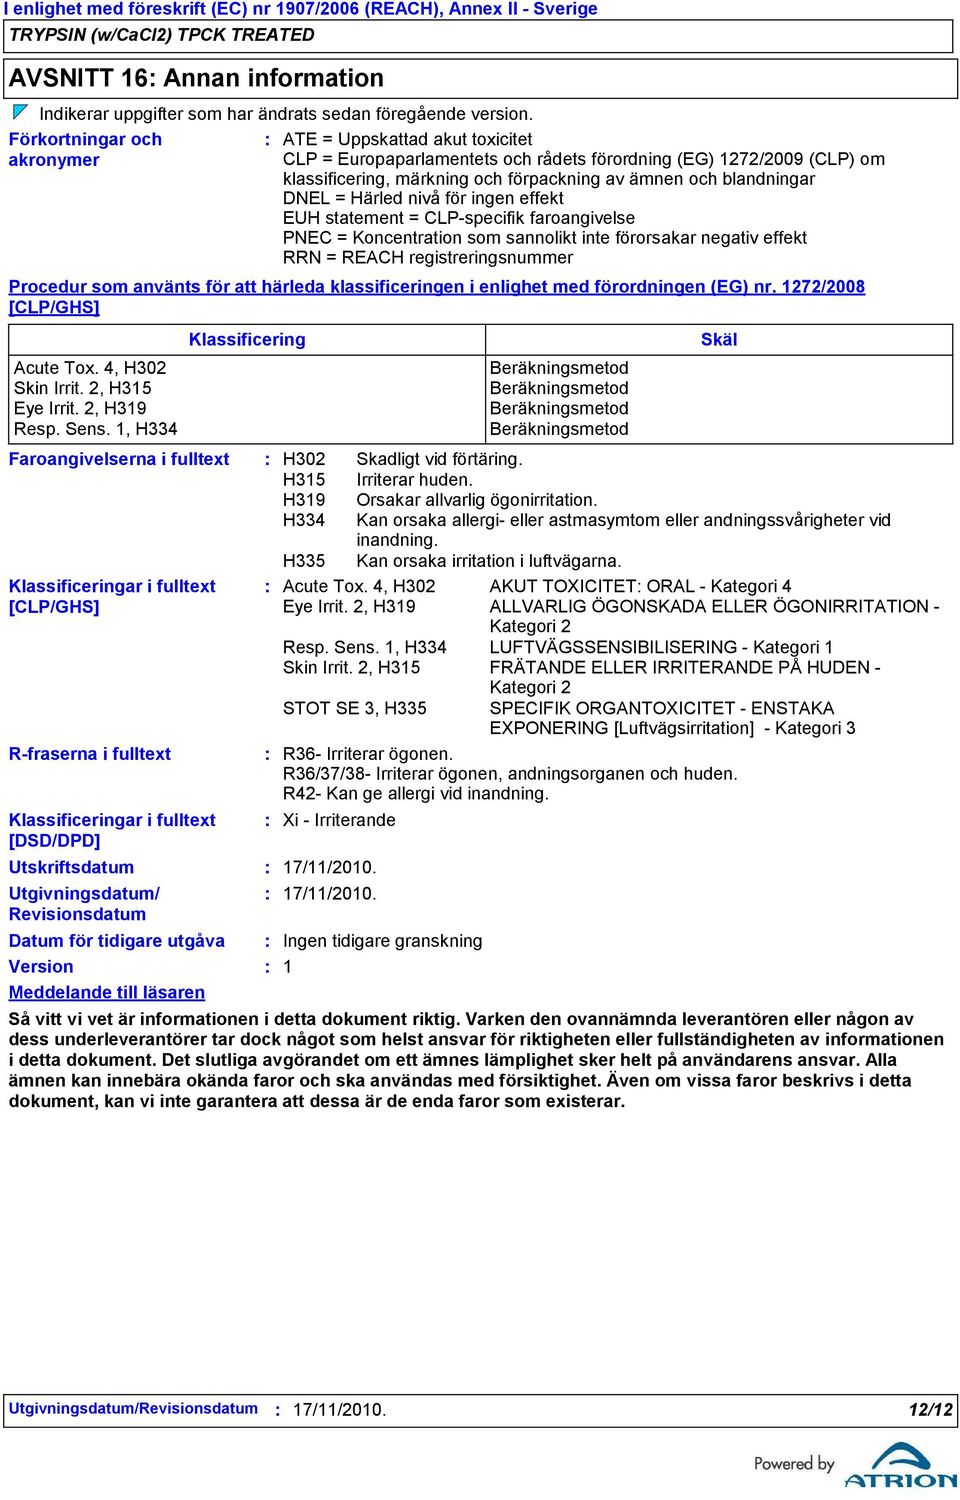 Meddelande till läsaren ATE = Uppskattad akut toxicitet CLP = Europaparlamentets och rådets förordning (EG) 1272/2009 (CLP) om klassificering, märkning och förpackning av ämnen och blandningar DNEL =